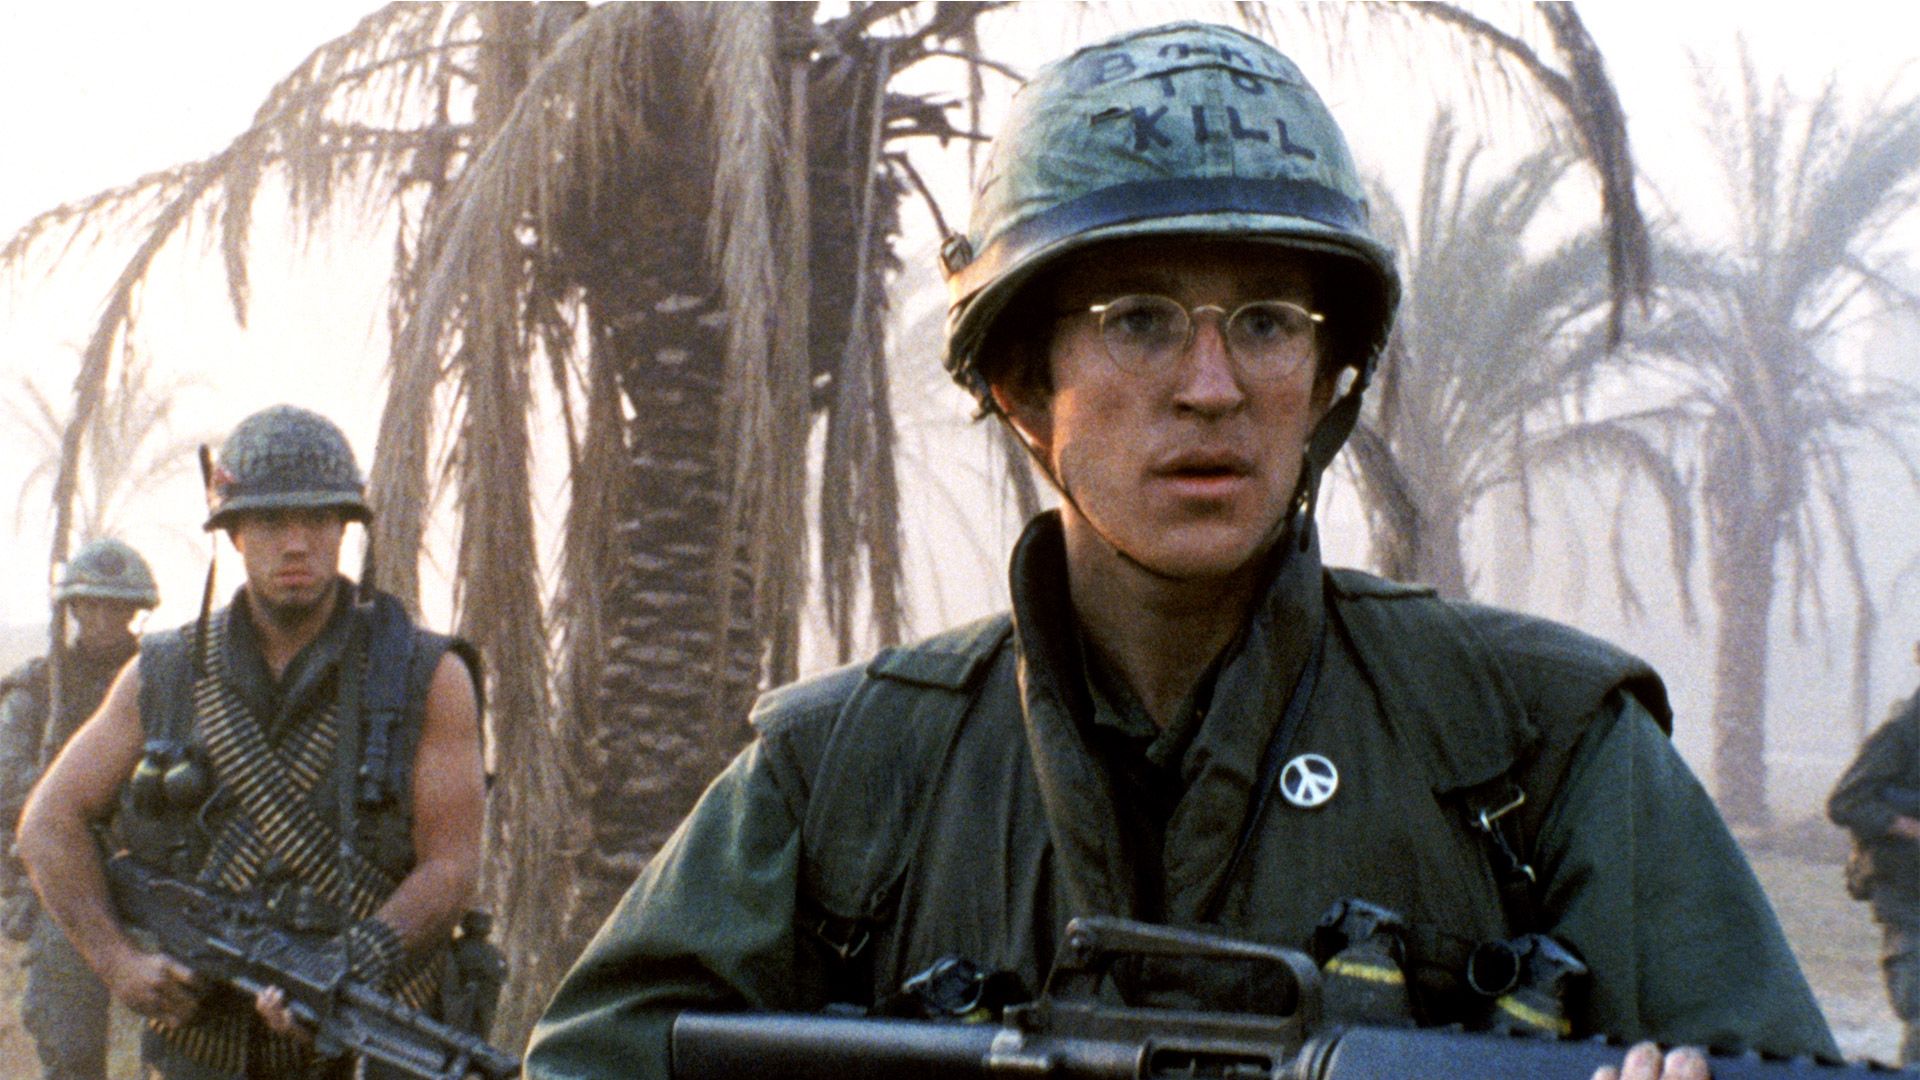 La Guerra de Vietnam desde la mirada nada complaciente de Stanley Kubrick en "Nacido para matar".